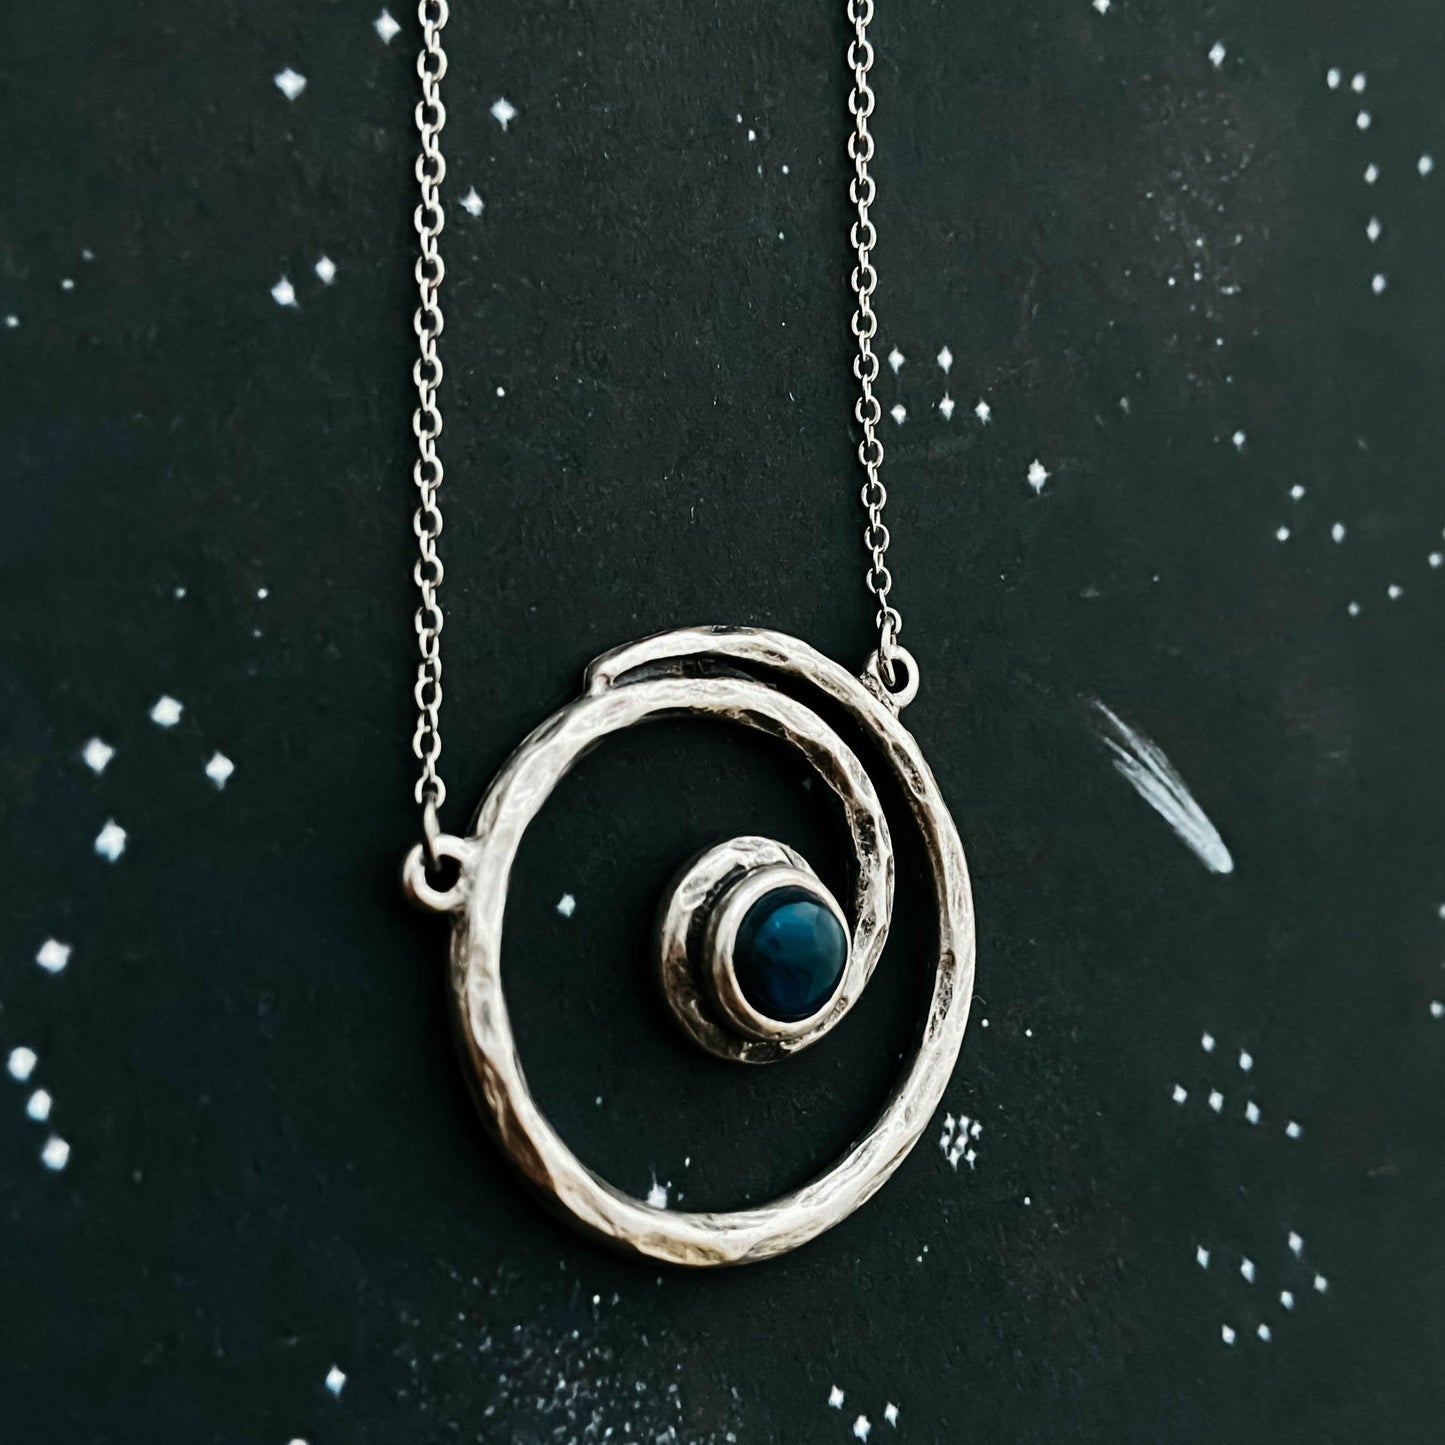 Conjunto de joyería de la Vía Láctea - Collar y aretes de plata en espiral con